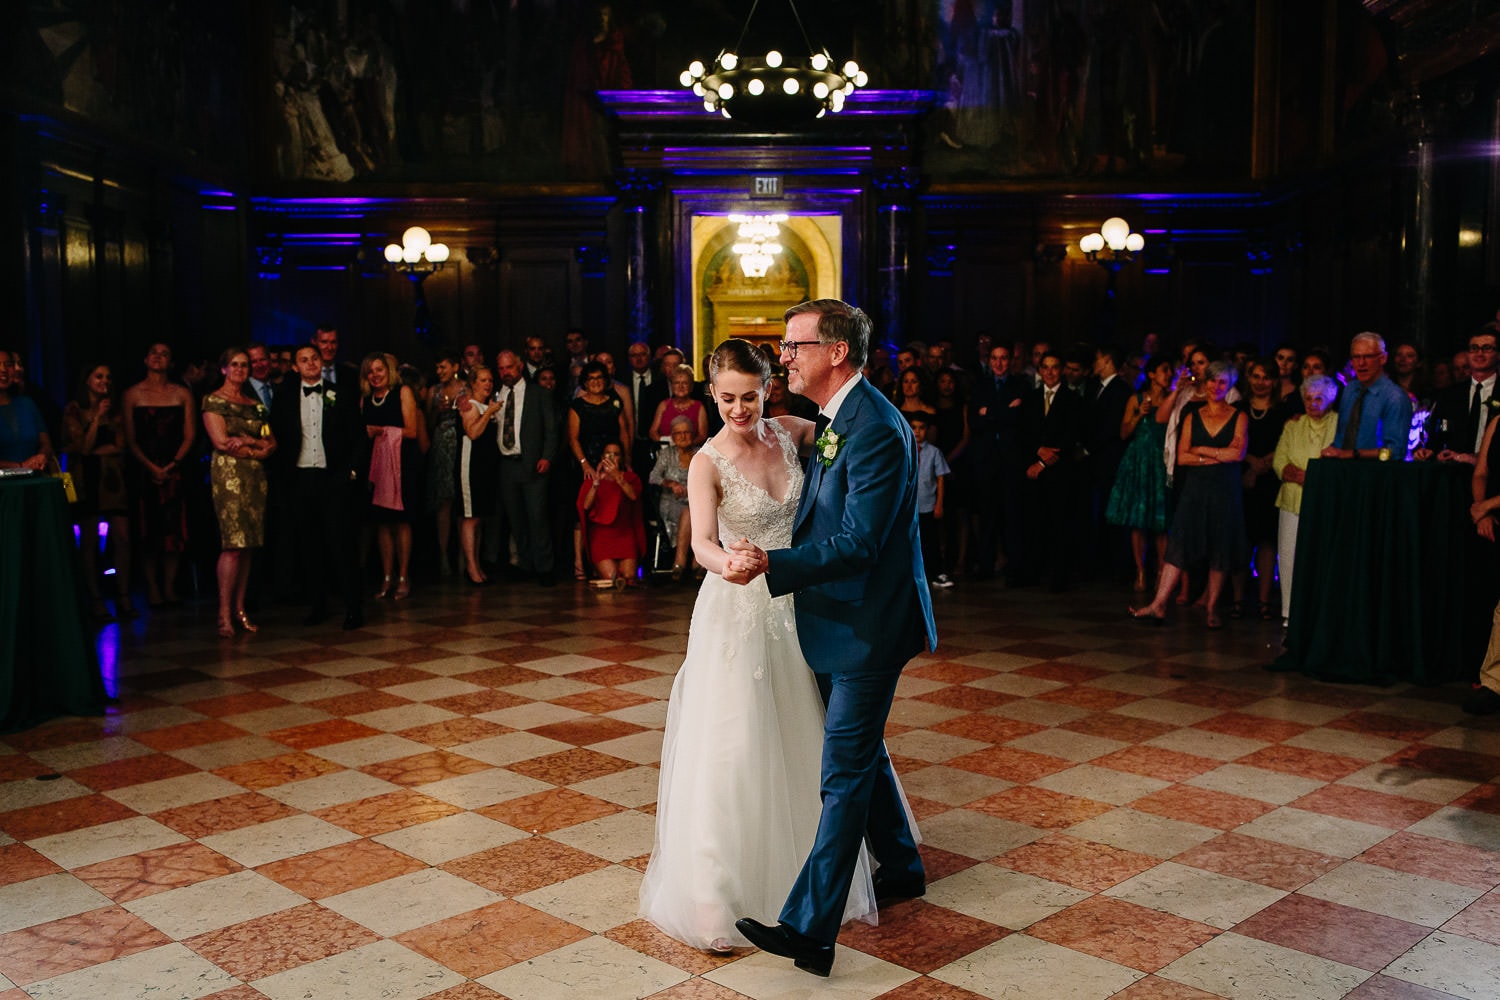 Boston Public Library wedding | Kelly Benvenuto Photography | Boston wedding photographer